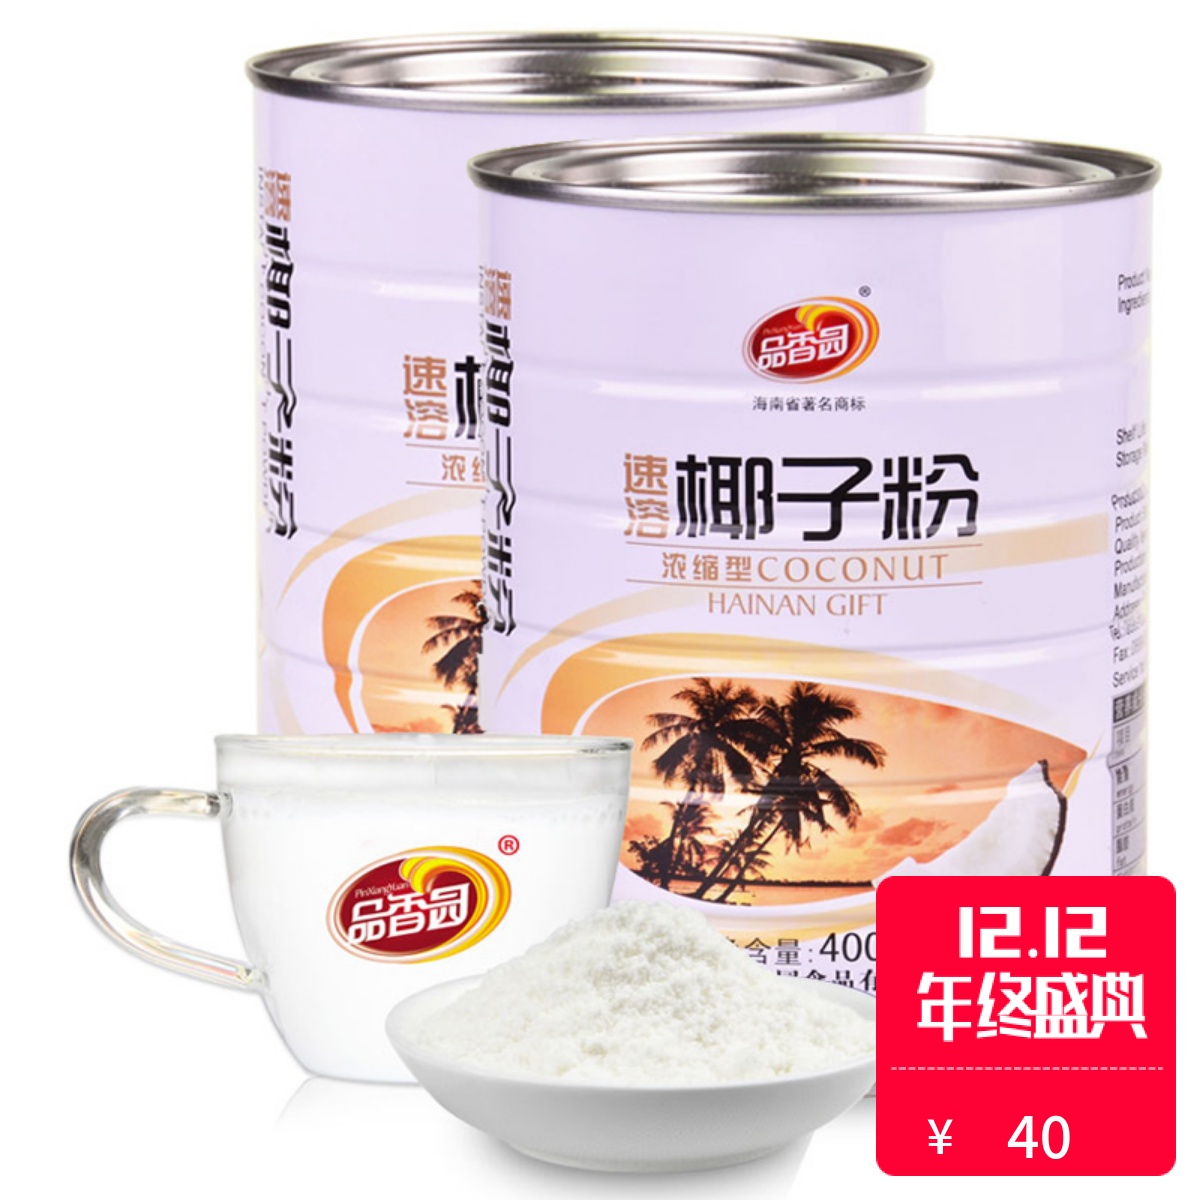 包邮 海南特产 品香园速溶椰子粉400g*2罐 椰浆椰奶粉早餐代餐粉